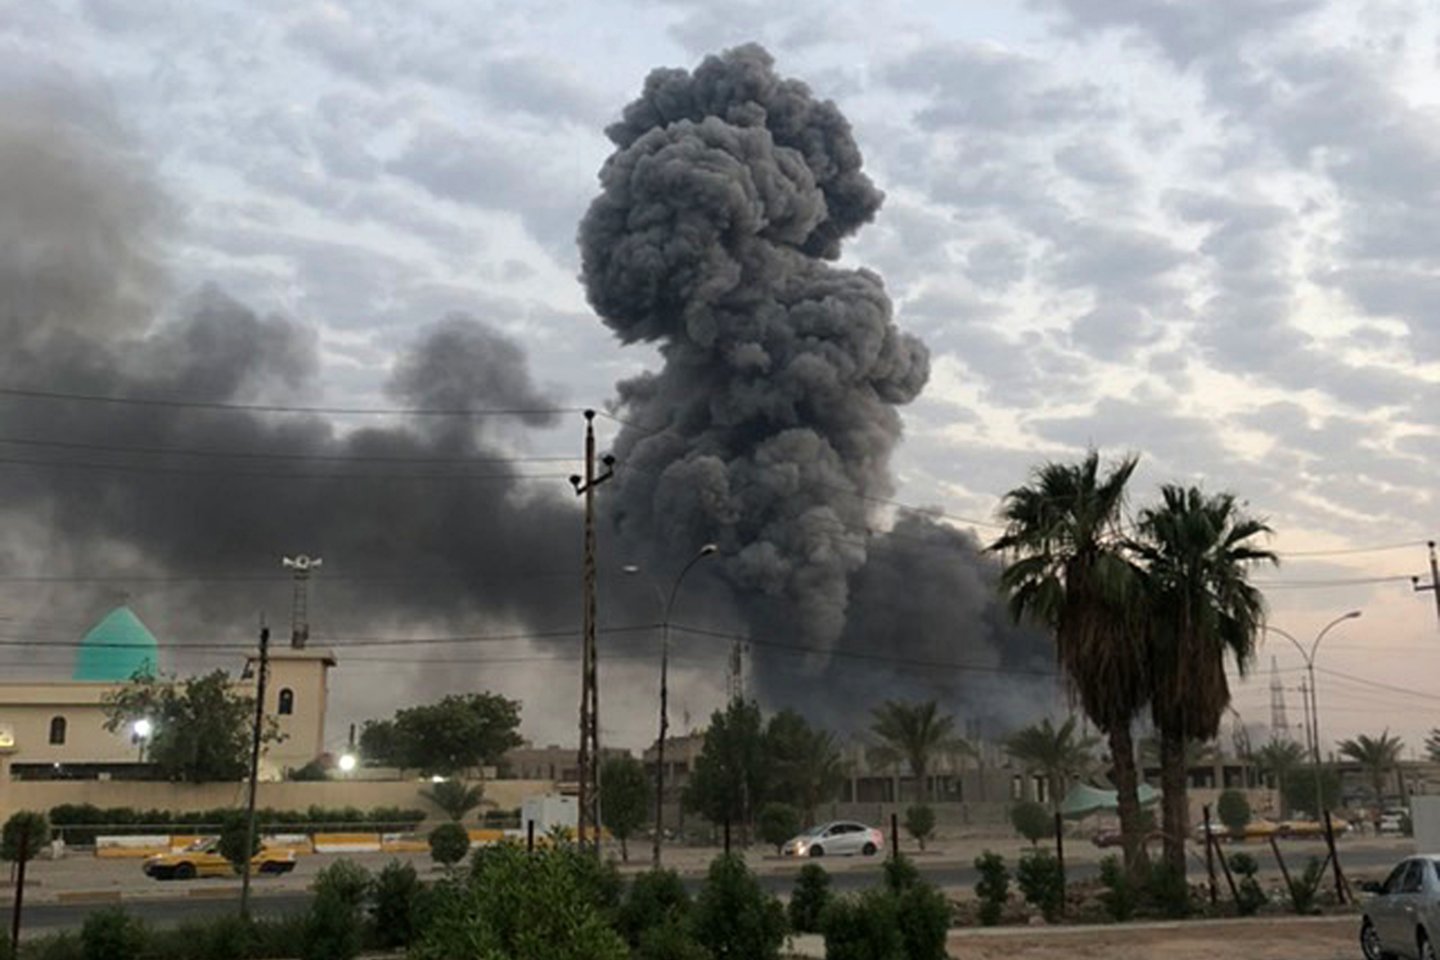  ​Bagdado centre ketvirtadienio rytą nugriaudėjus dviem sprogimams, žuvo mažiausiai šeši žmonės, dar 25 buvo sužeisti, pranešė policija.<br> AP/Scanpix nuotr.